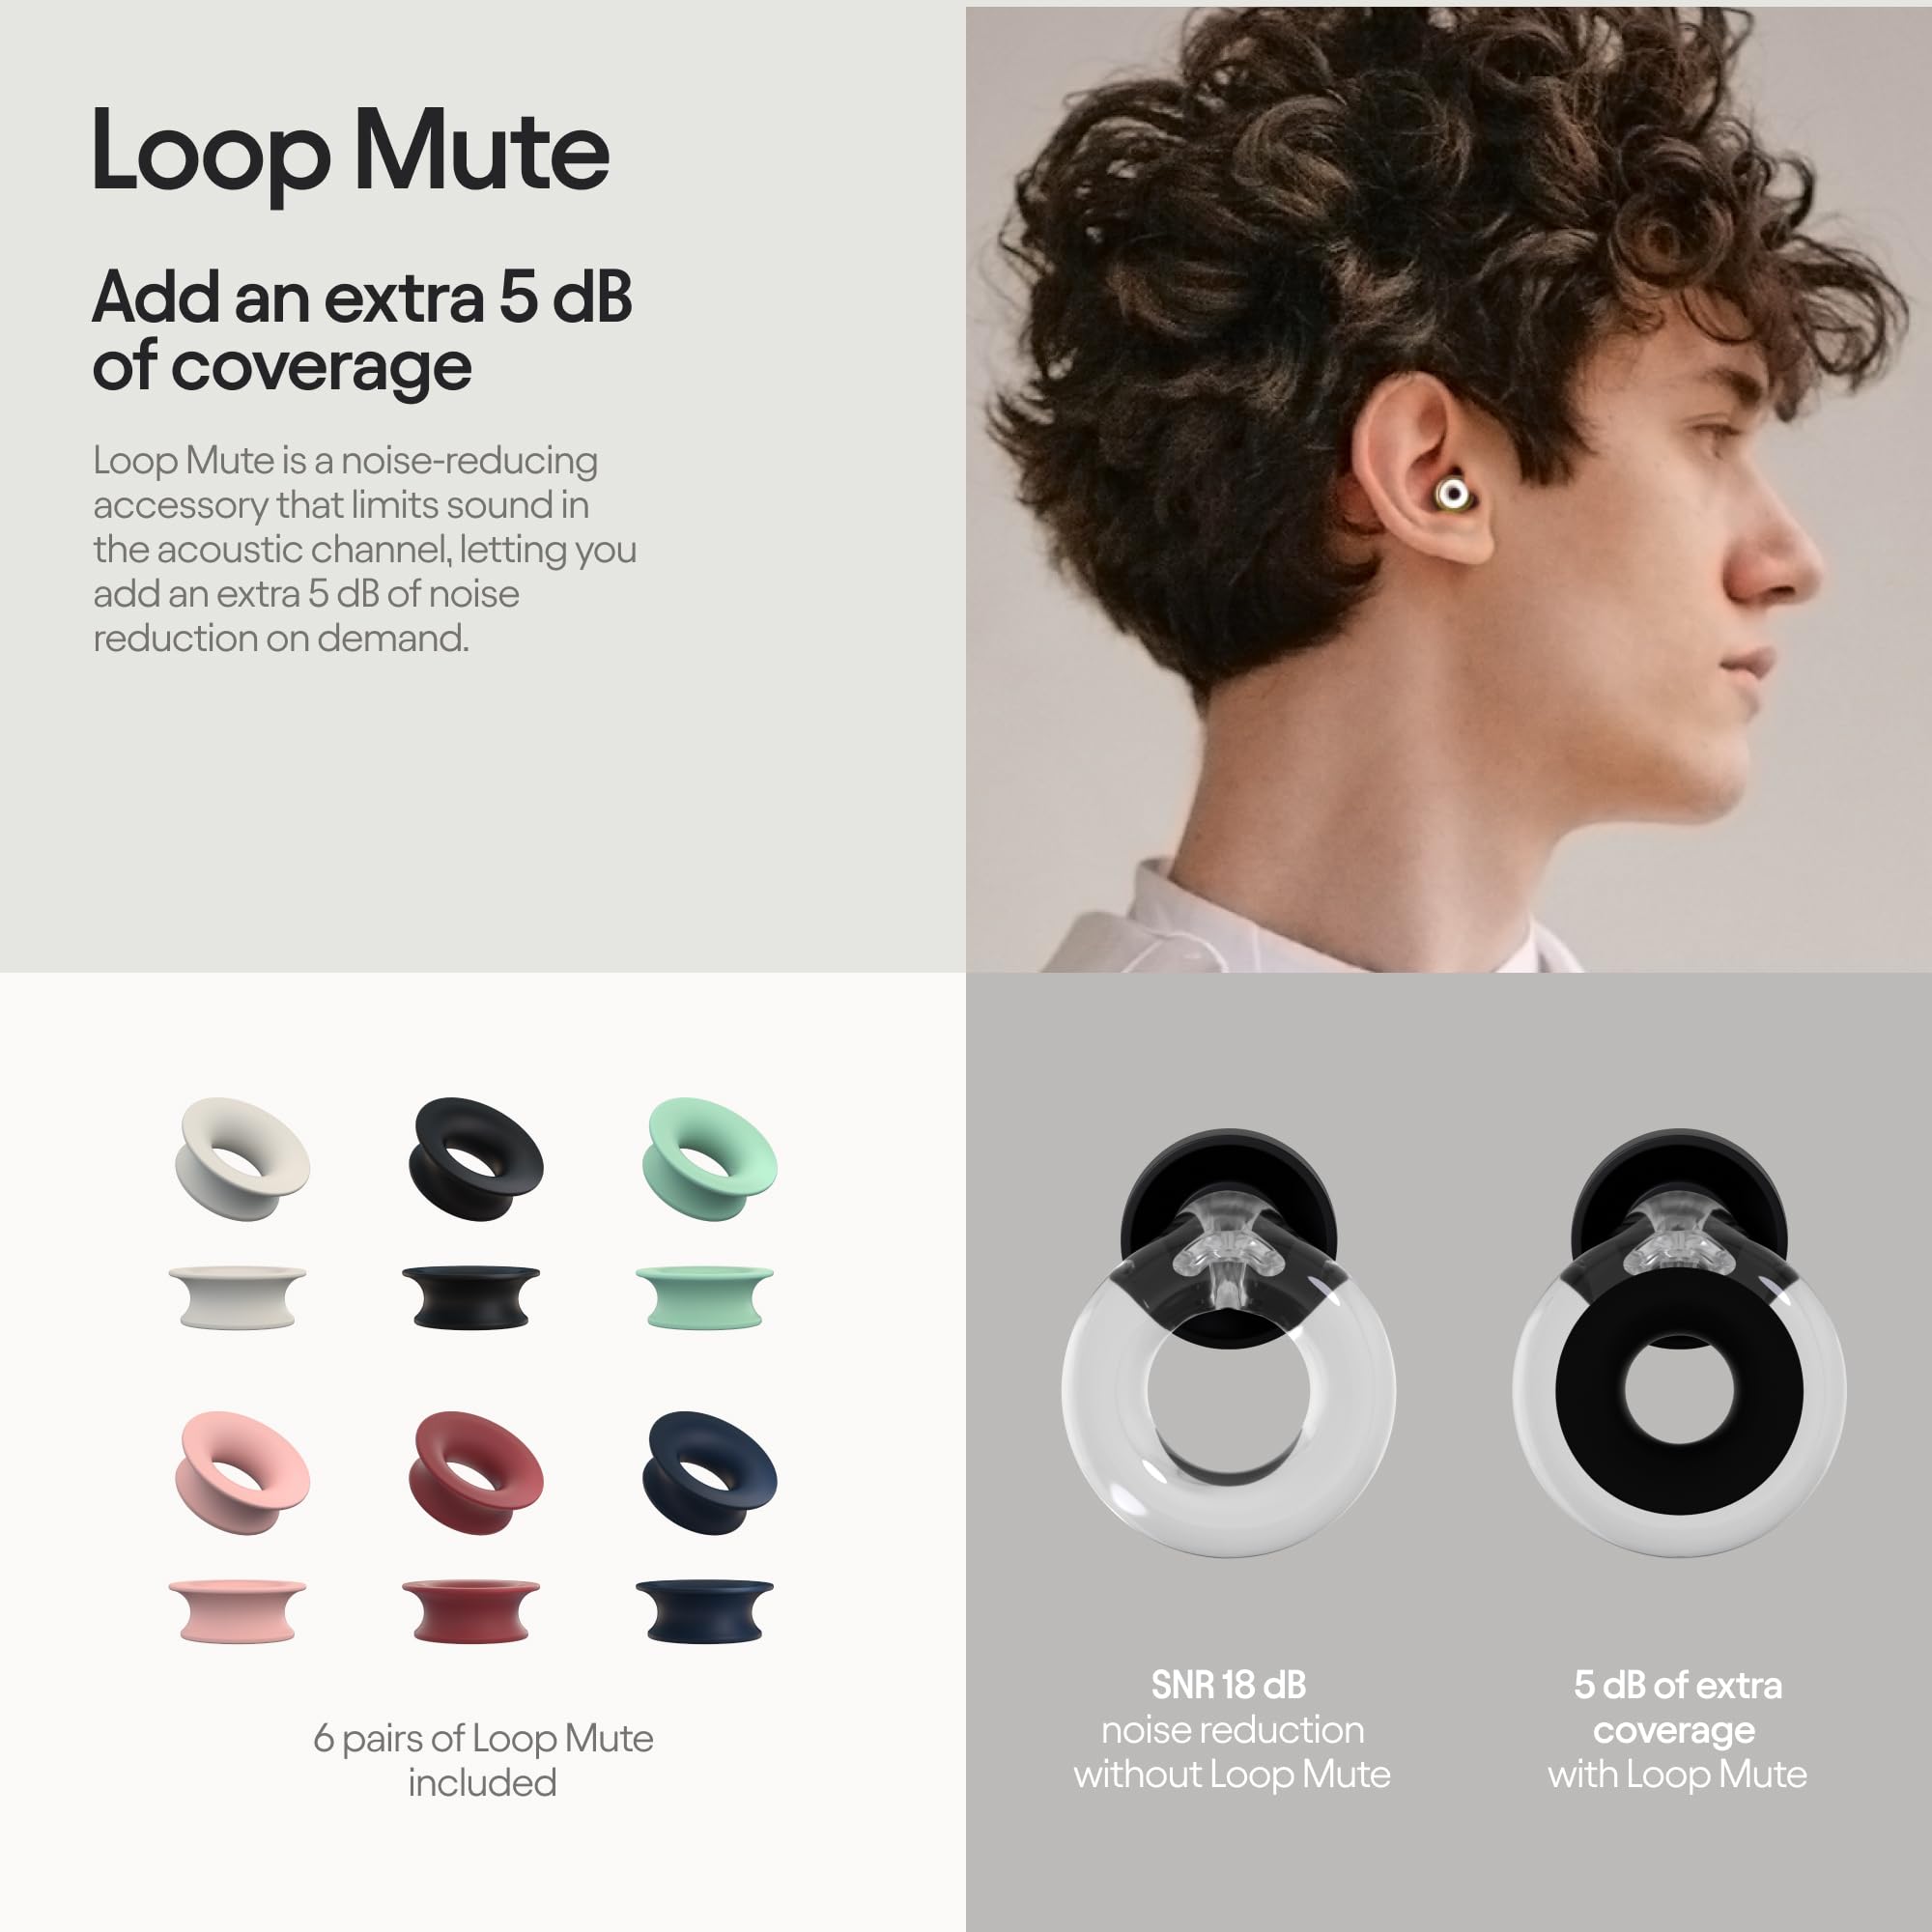 Loop Earplugs Daily Control Bundle (2-Pack) + Loop Mute – Loop Quiet (Black) + Loop Engage (Black) | Ear Plugs for Sleep, Focus, Noise Sensitivity, Socializing & More | 26 dB/16 dB Noise Reduction